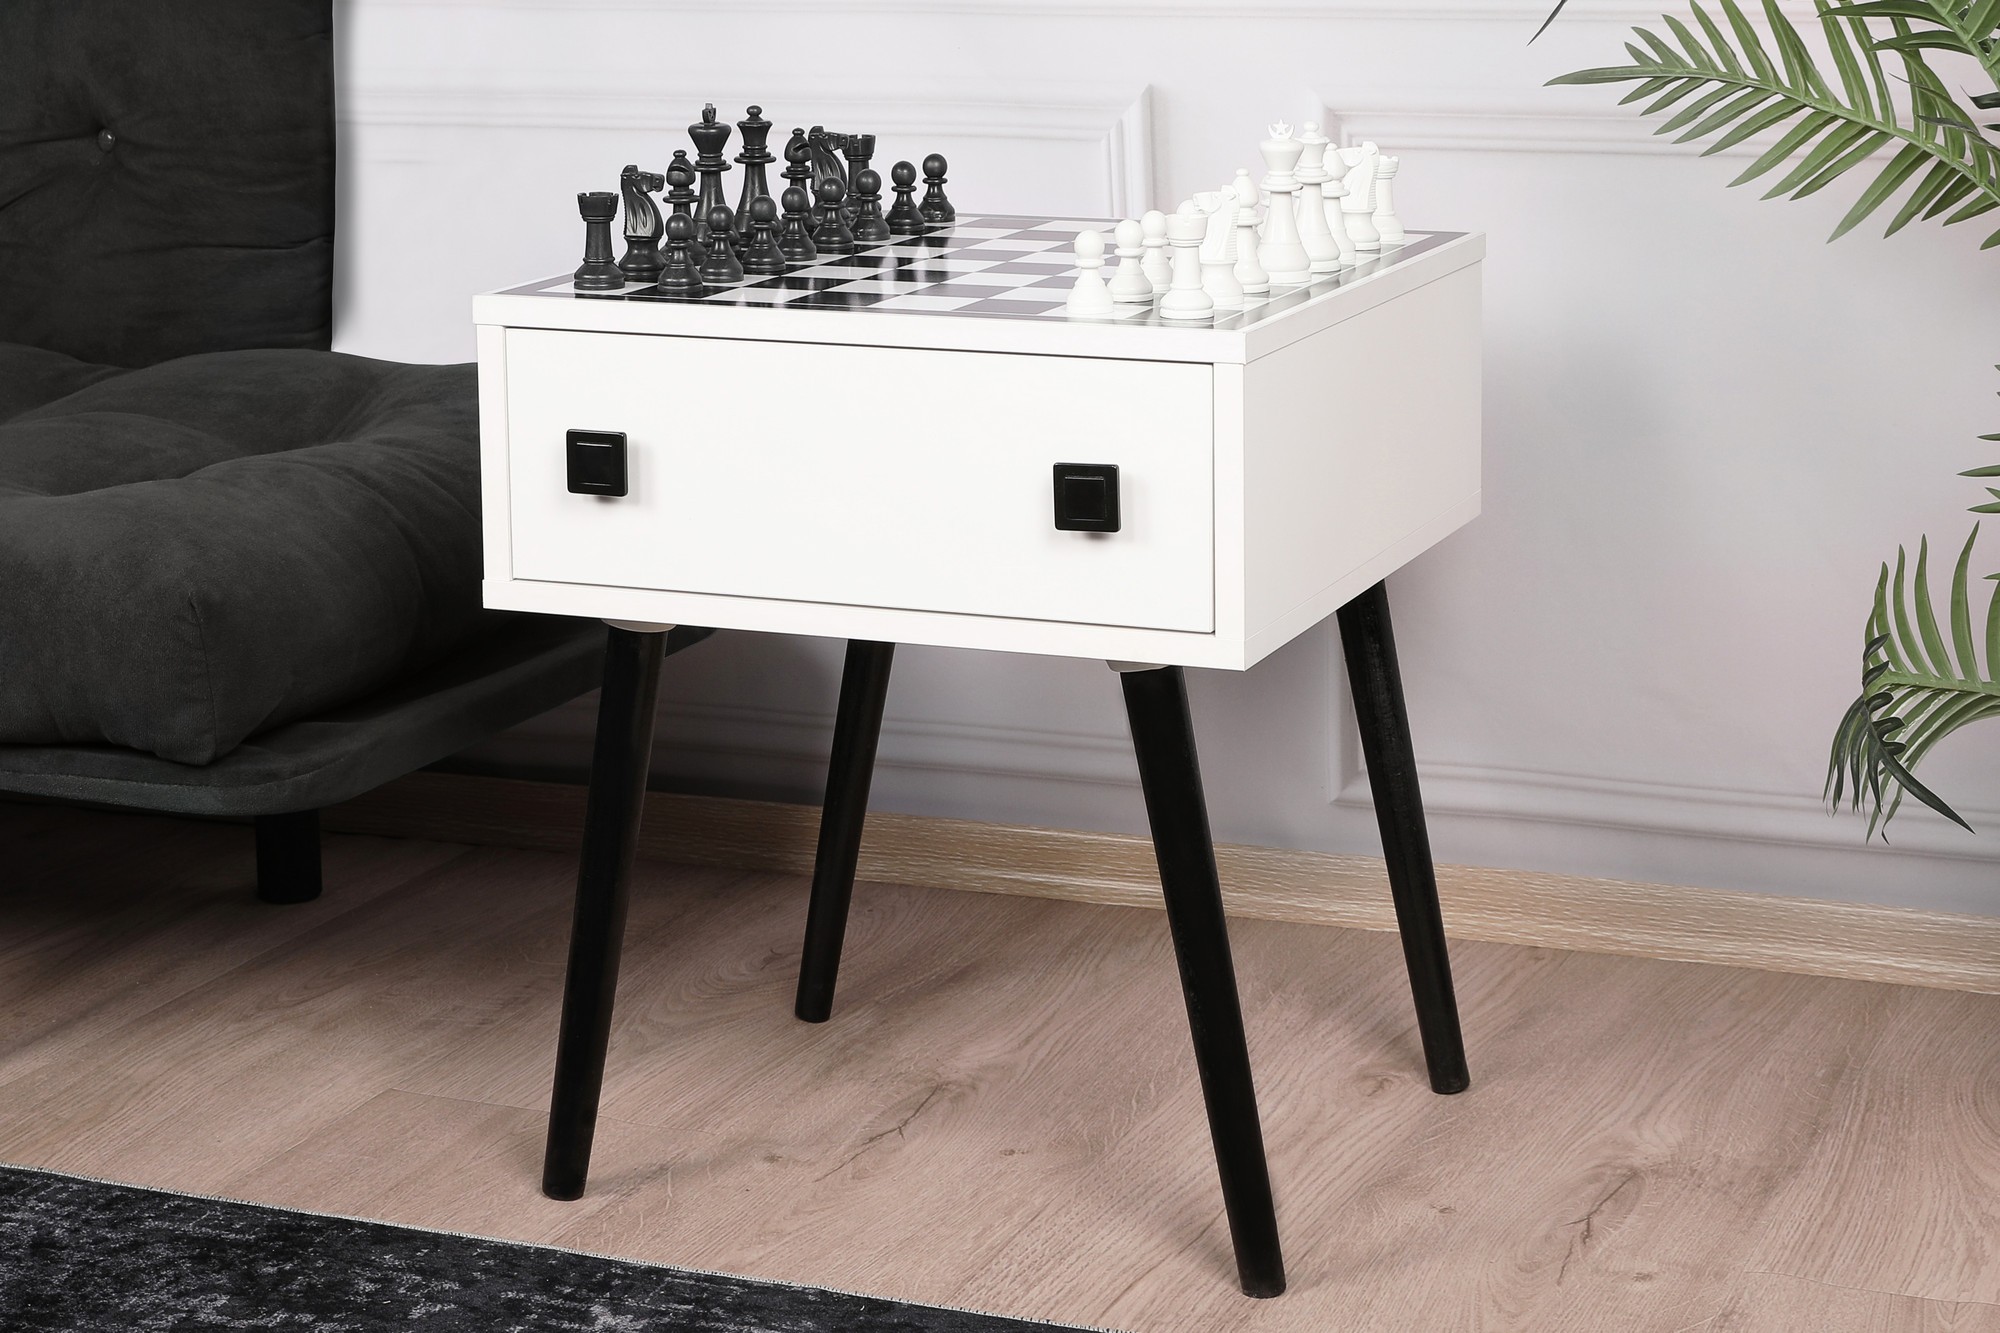 Table d'échecs Chesso - Black, White